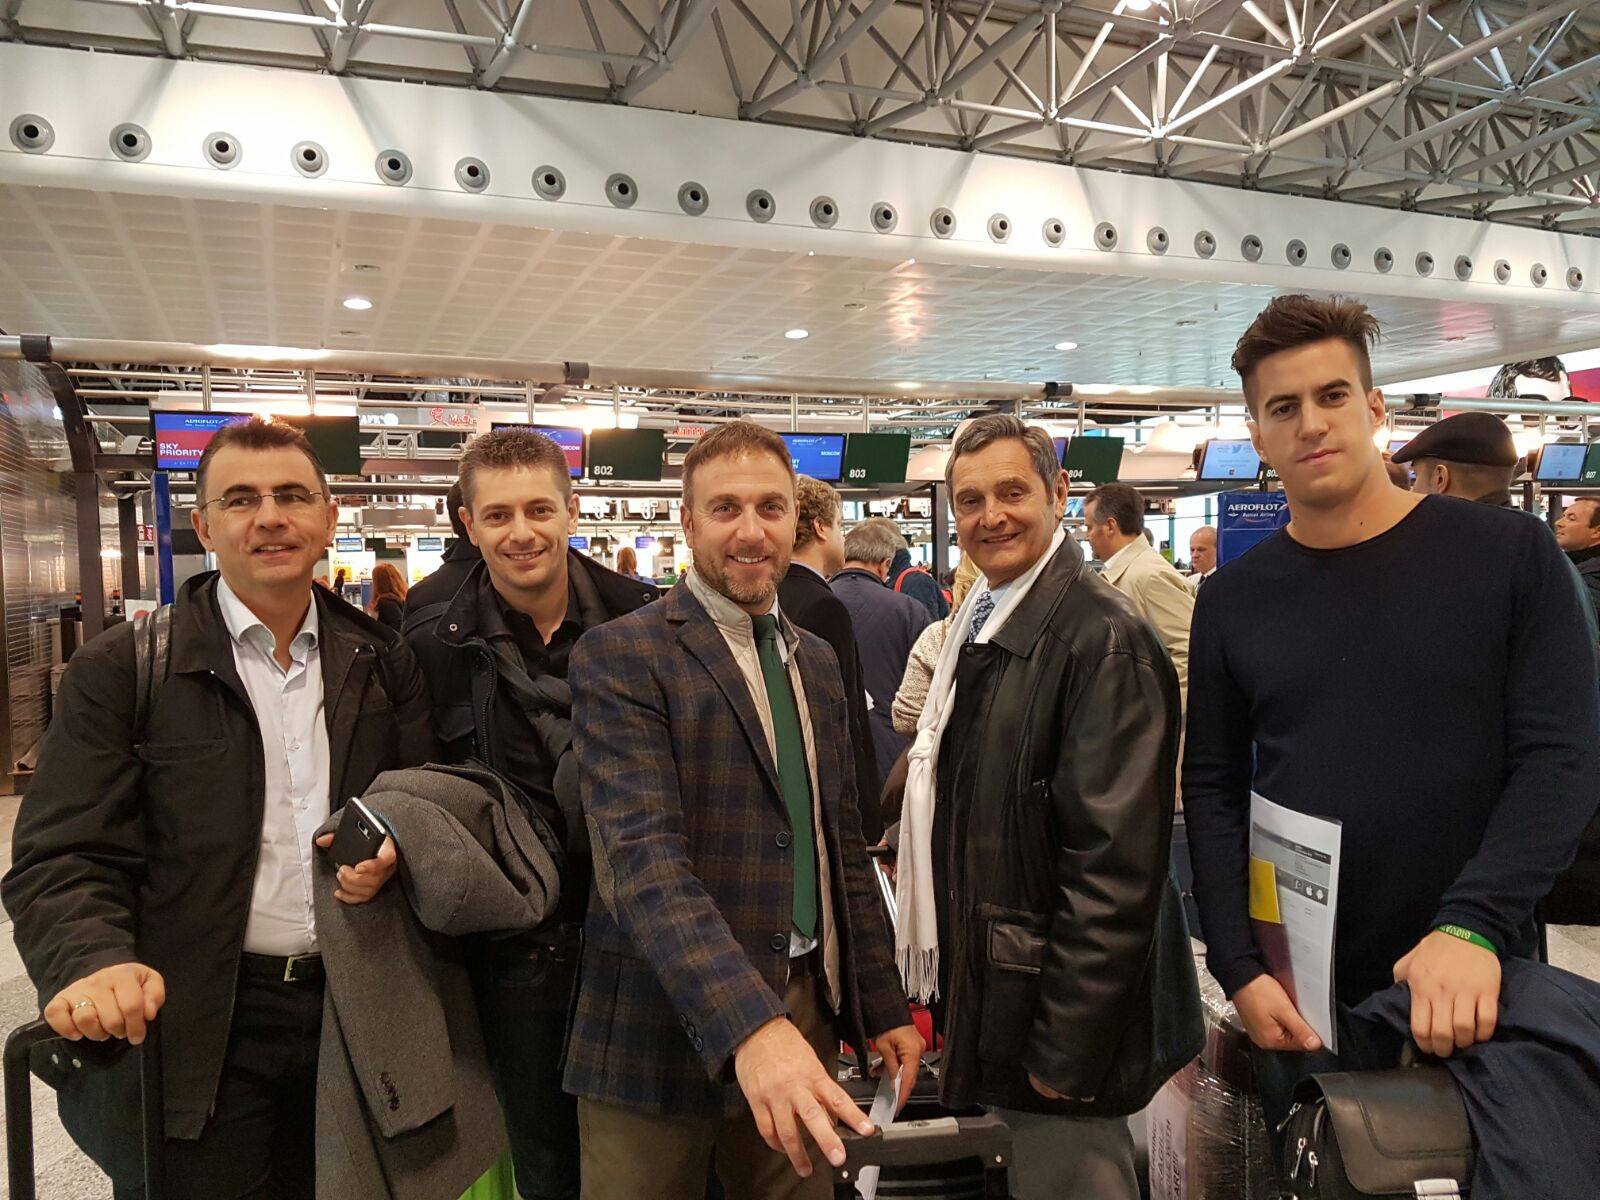 Italian collaborators travelling to Russia-annexed Crimea ~